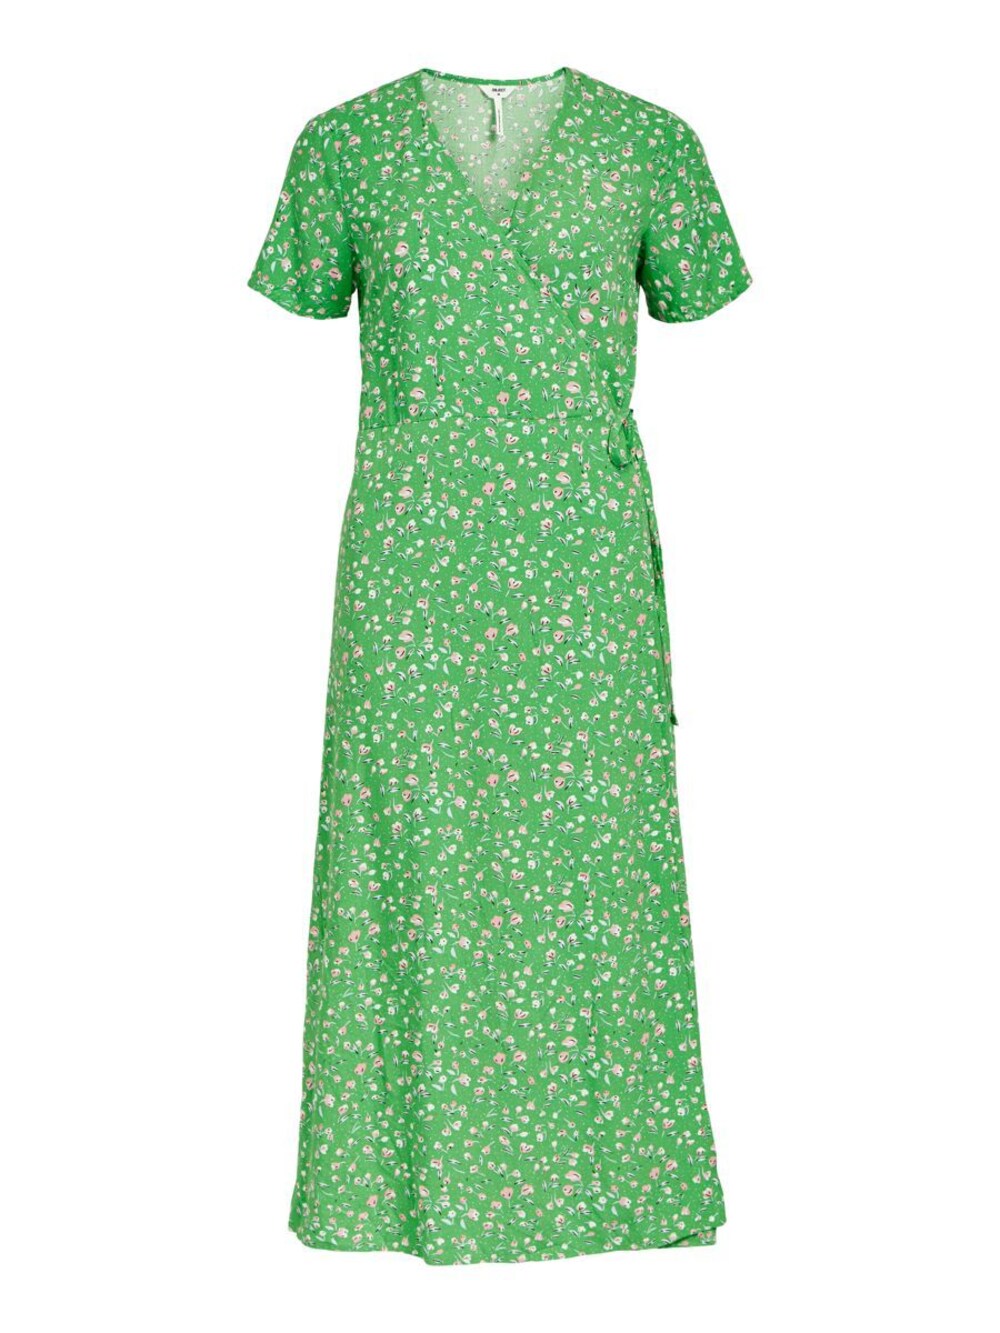 Платье Object JEMA, трава зеленая флуоресцентная лампа большая ветка сосны куст зеленая трава цветок строительные кирпичи 2417 2423 4727 6255 30176